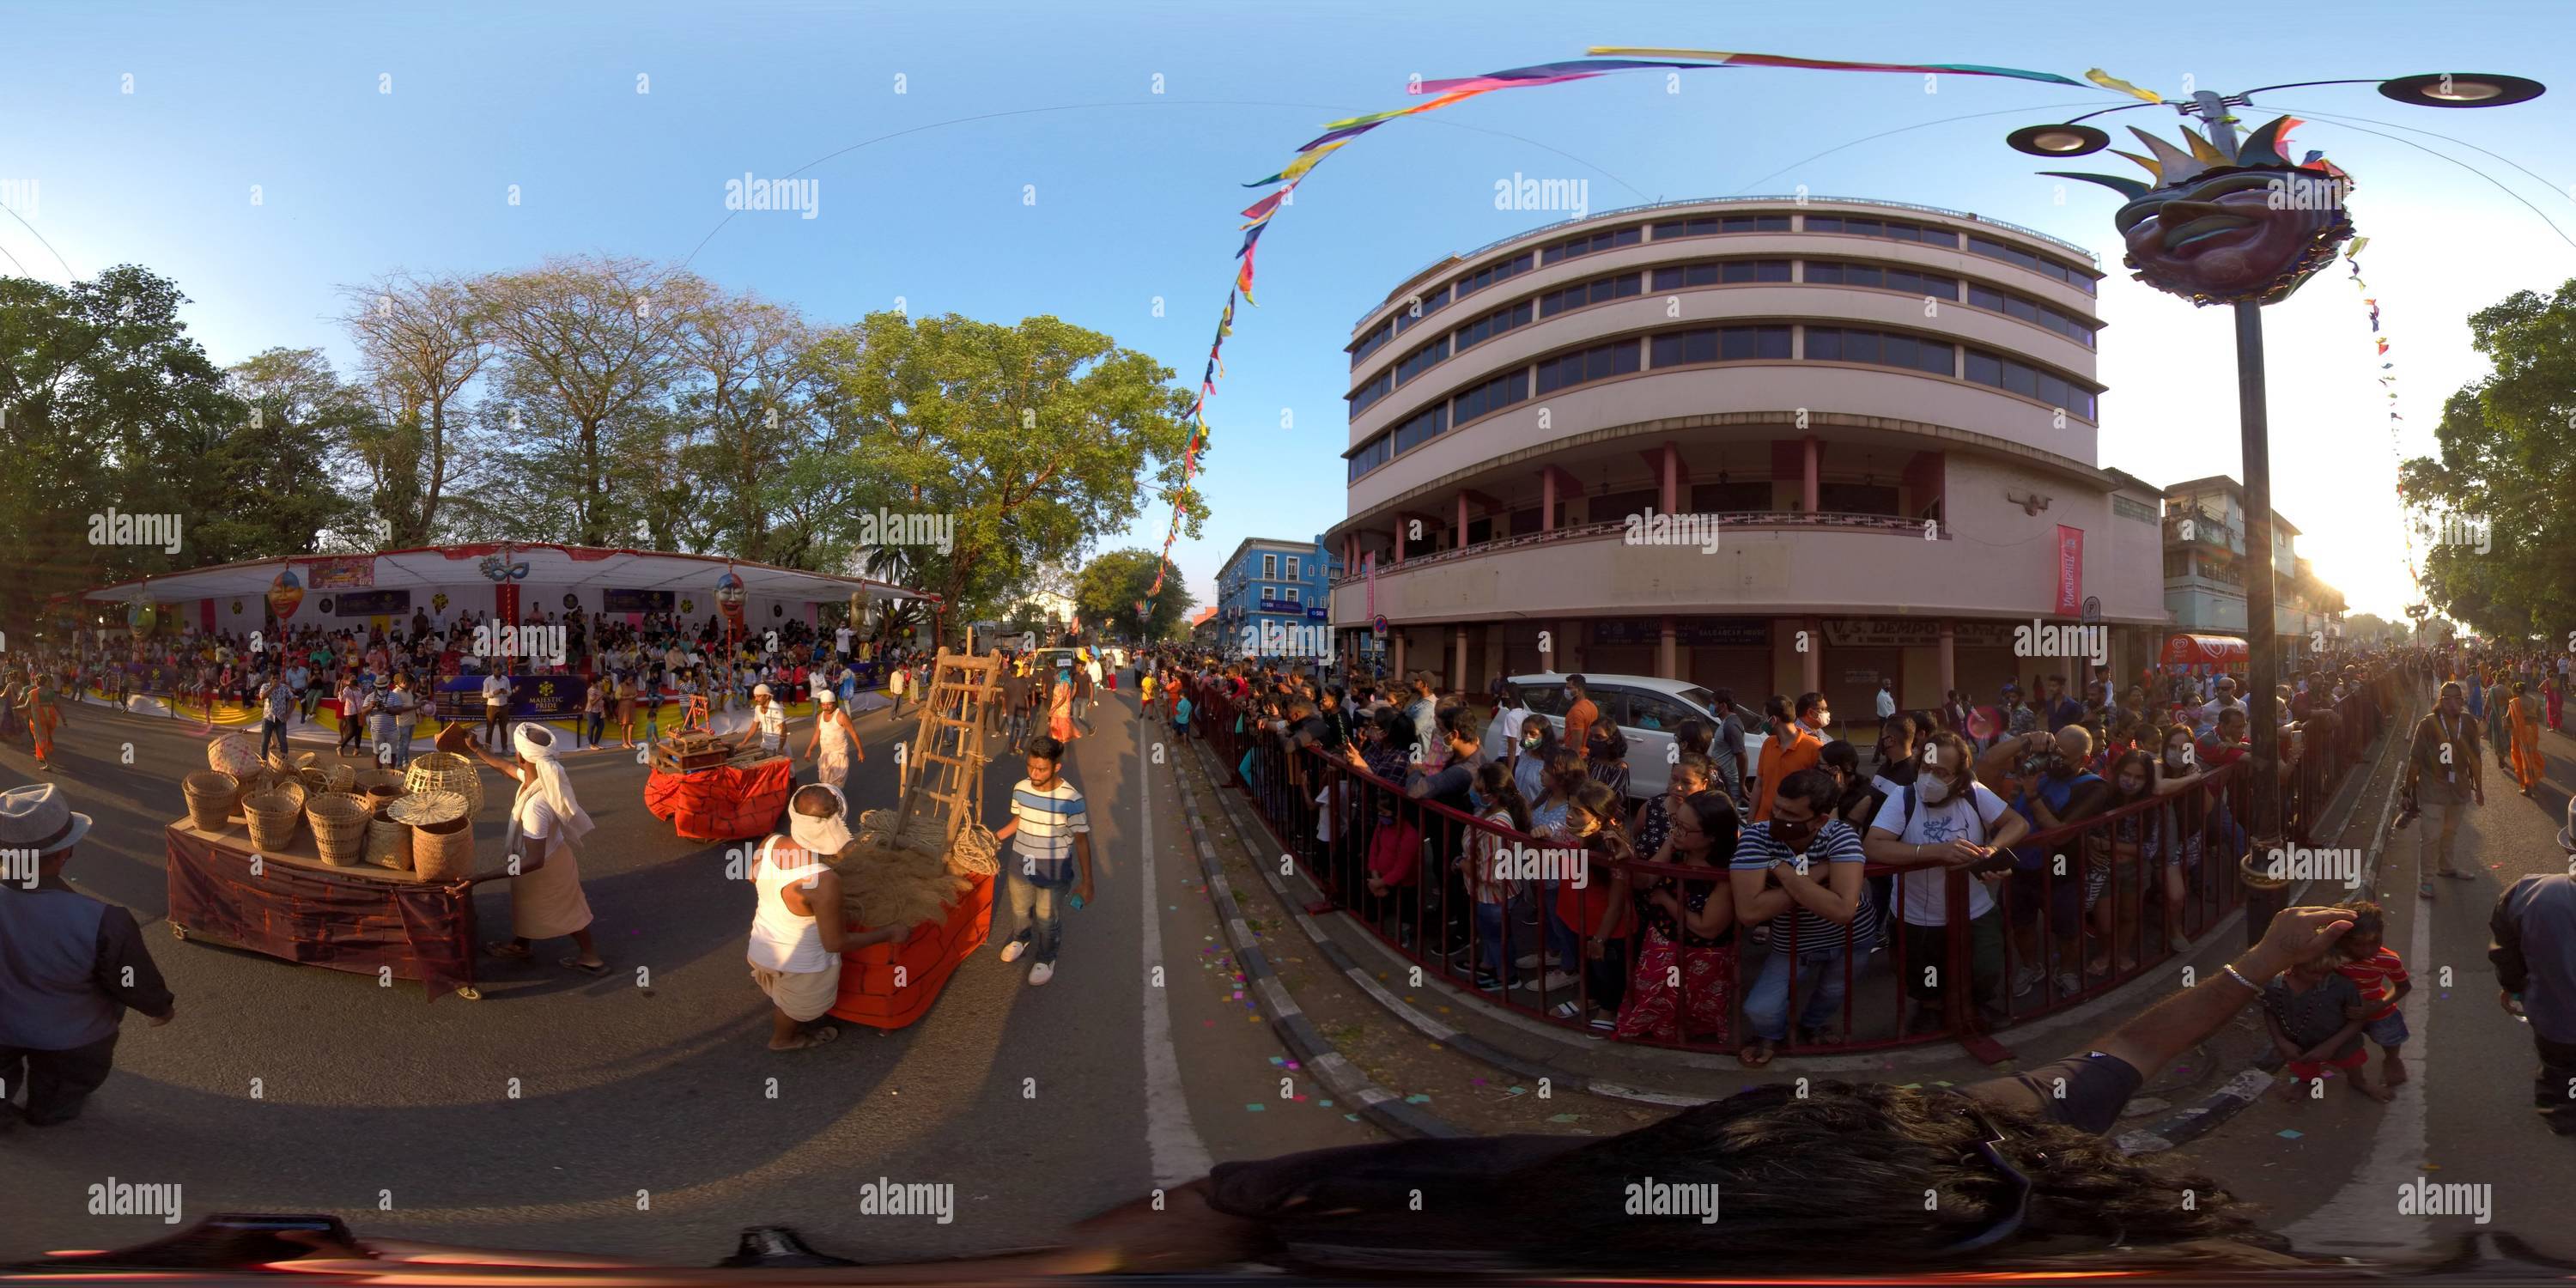 Vista panorámica en 360 grados de Viva Carnaval 2021